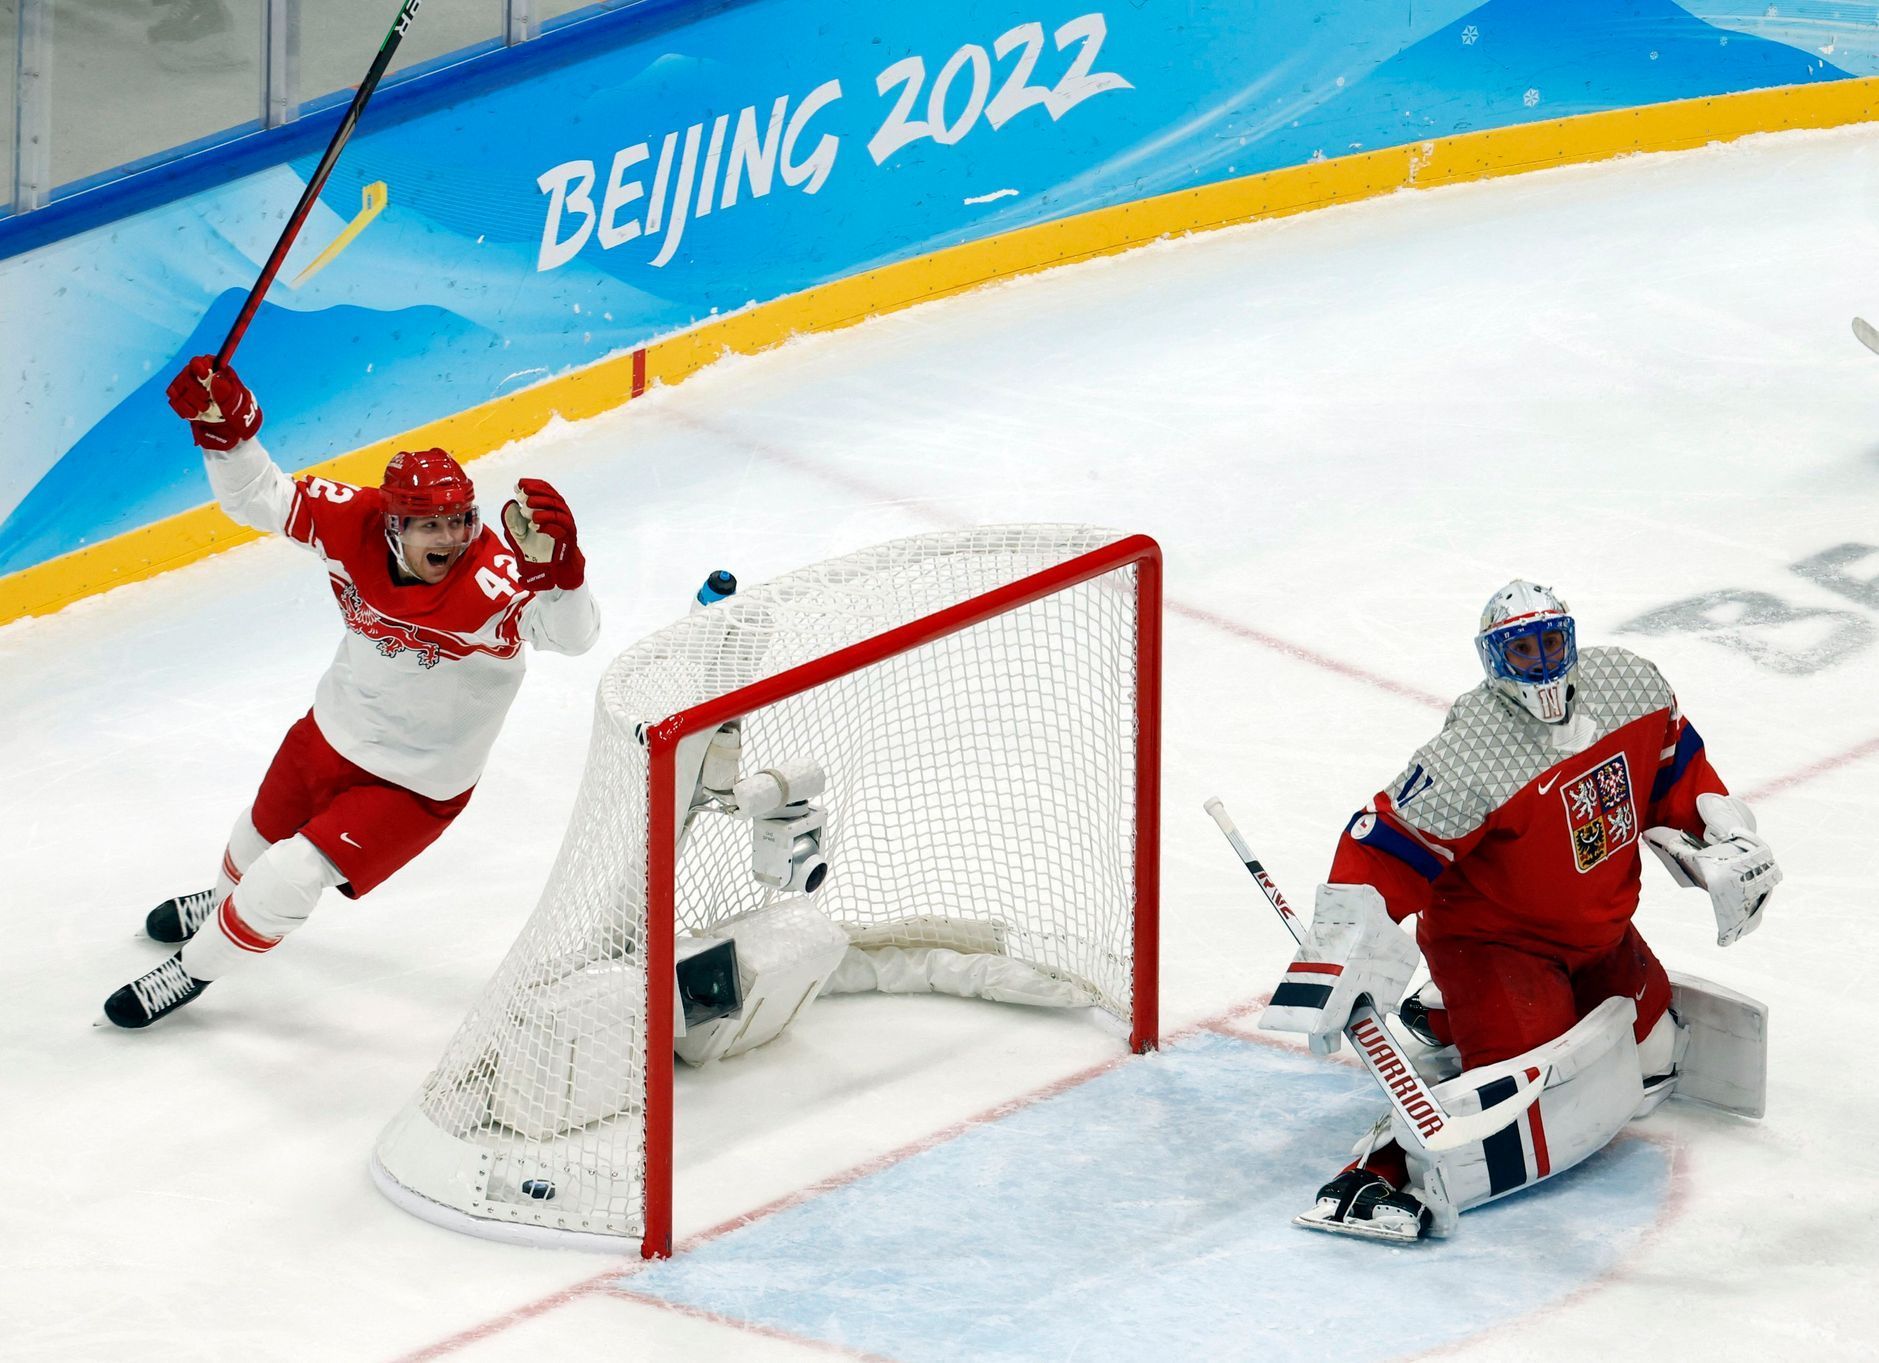 OH 2022, Peking, hokej, Česko - Dánsko, Dánové slaví gól